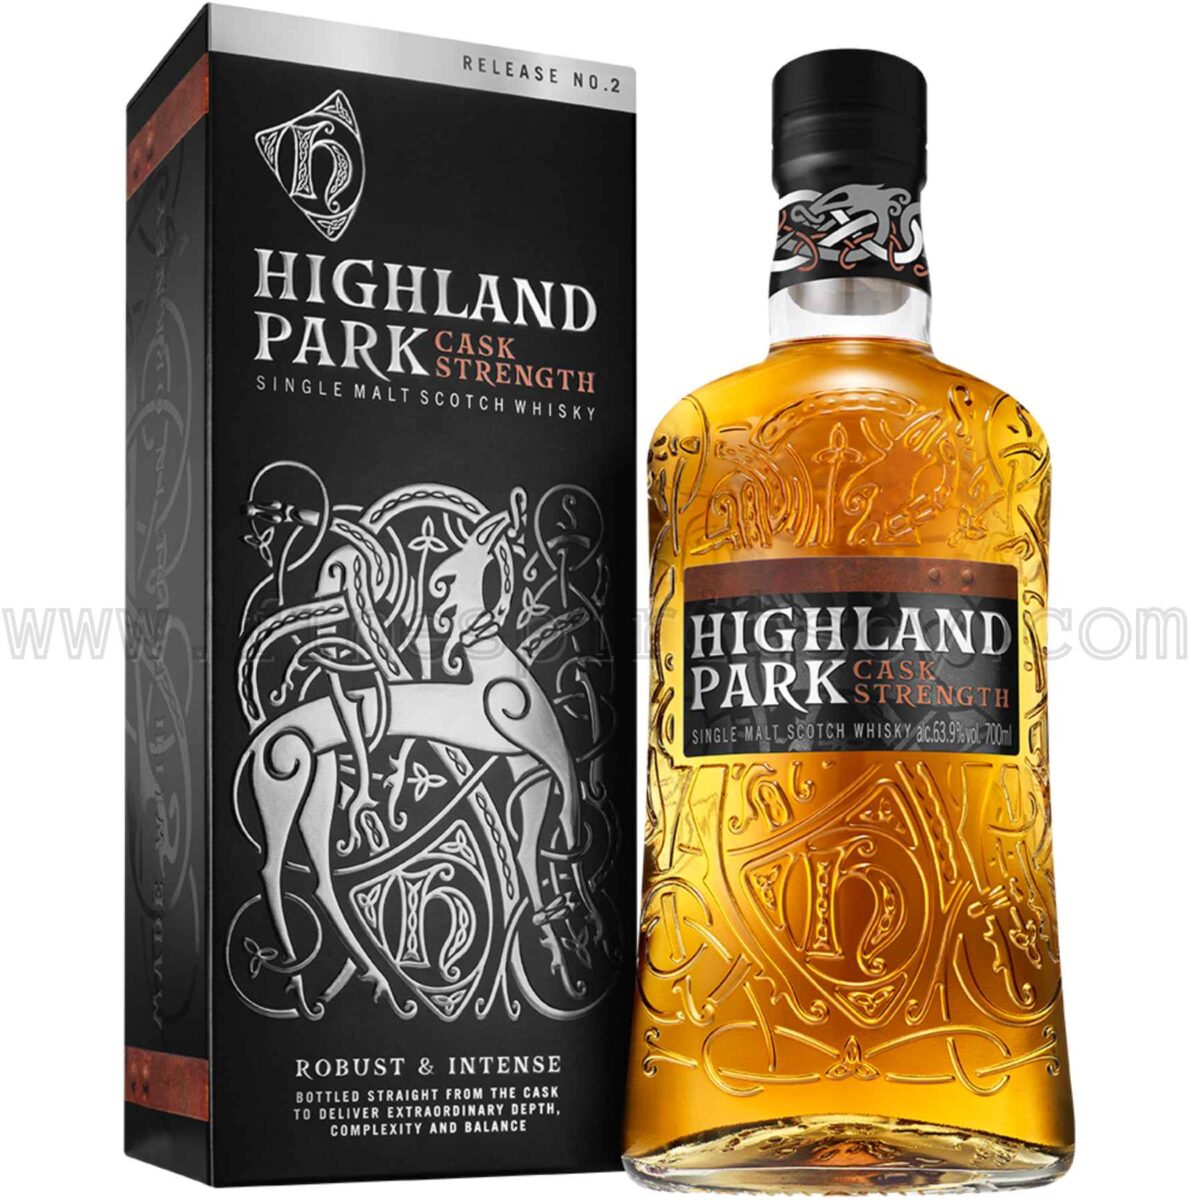 Highland Park Cask Strength Release No 2 700ml 63.9%